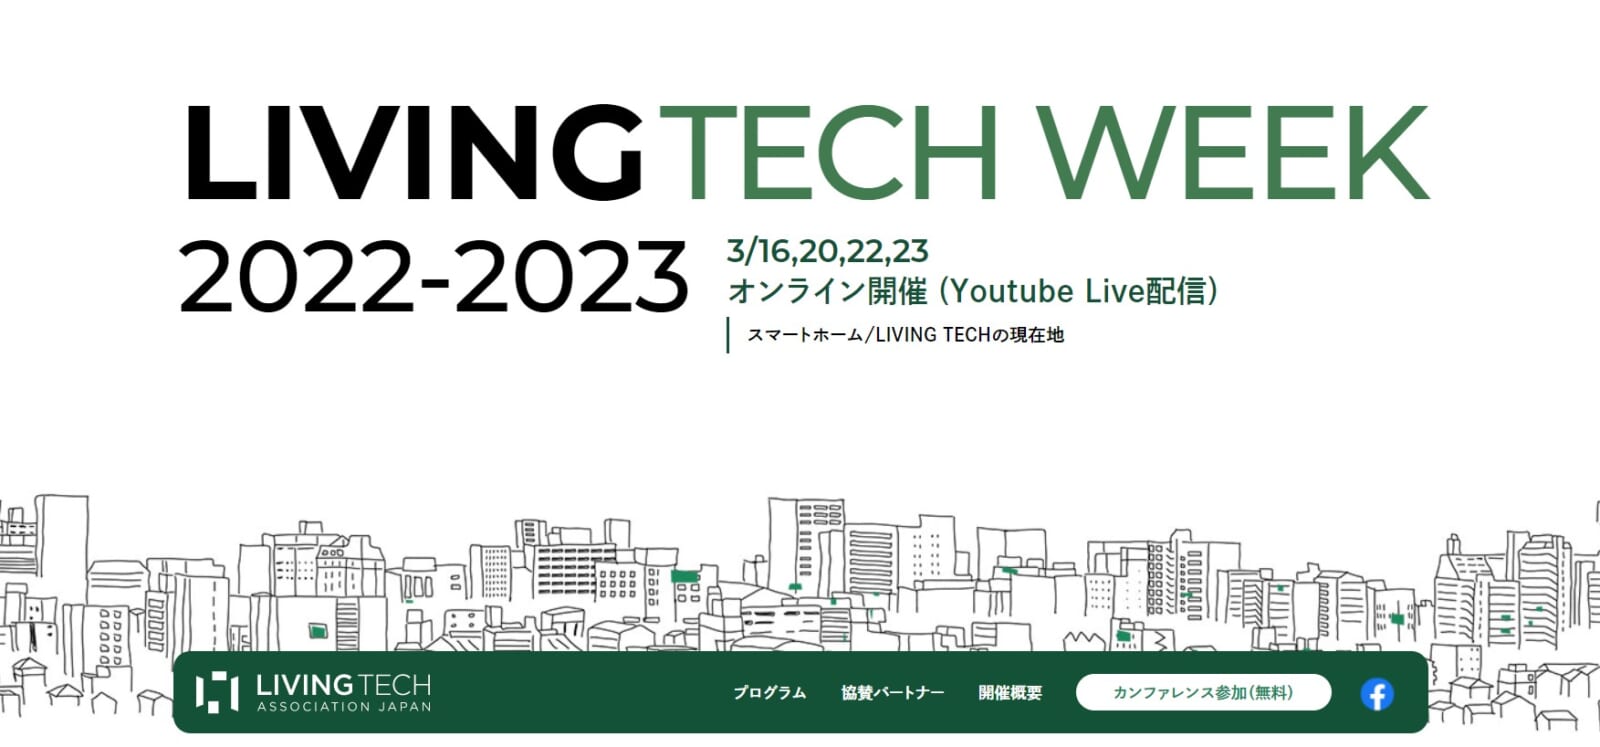 日本初(※1)のスマートホームカオスマップも発表！スマートホームの現在地がわかるカンファレンス「LIVING TECH week 2022-2023」3月16日(木)から4日間、開催決定！